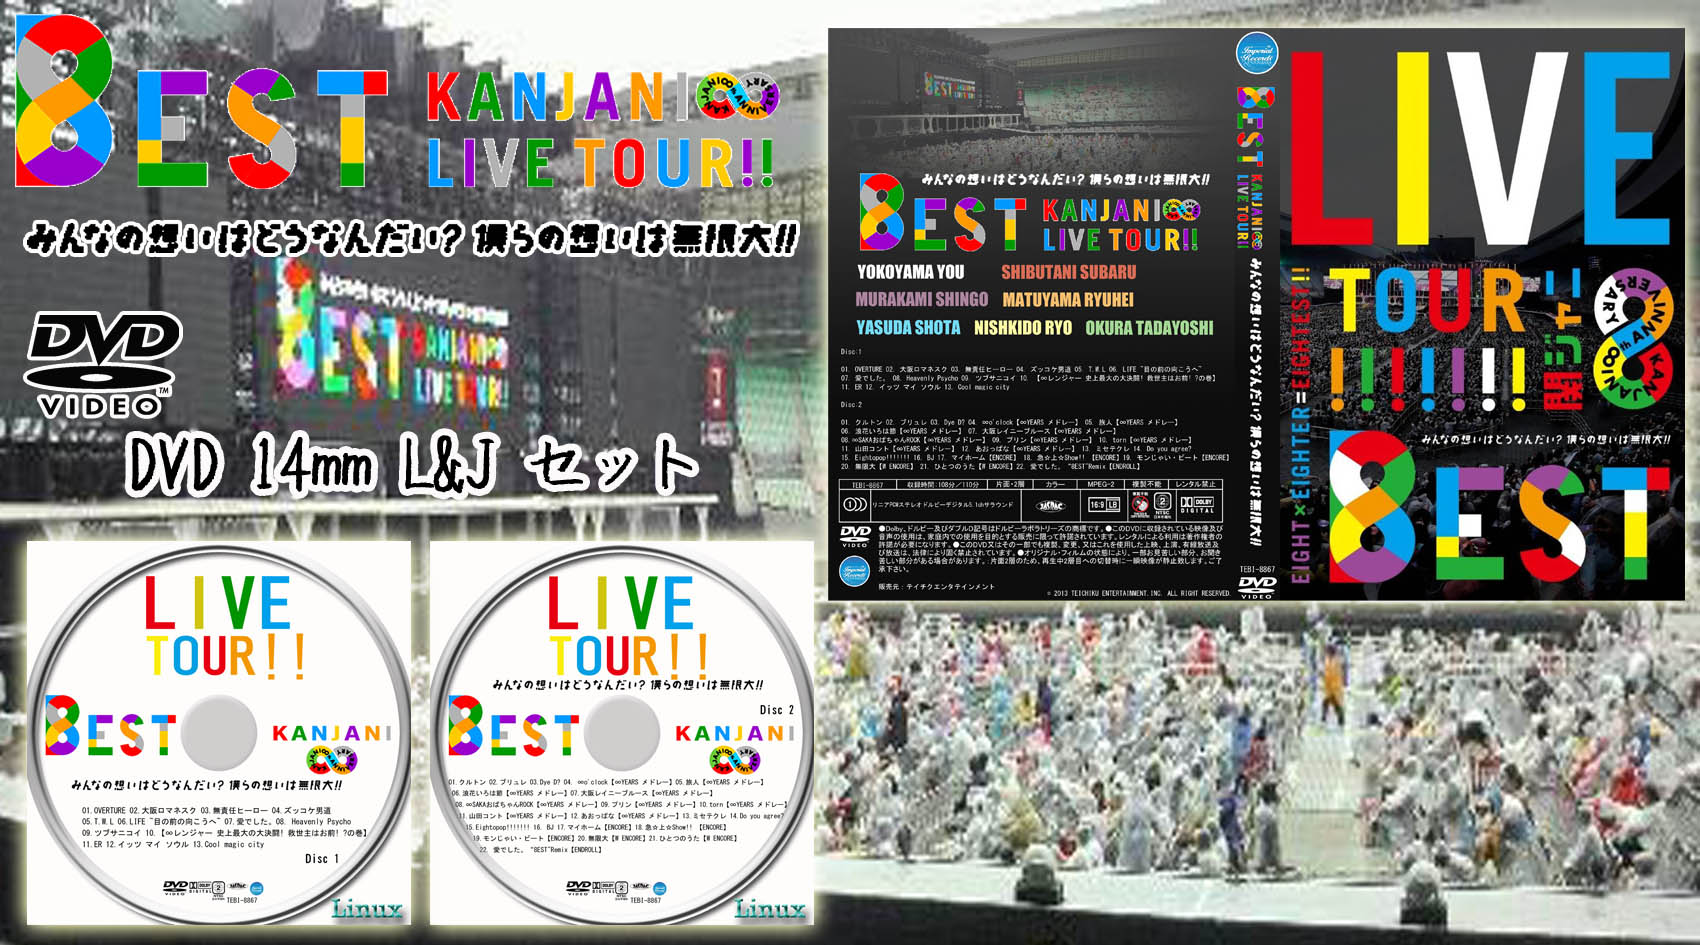 関ジャニ∞ KANJANI∞ LIVE TOUR!!8EST みんなの想いはど… - ブルーレイ